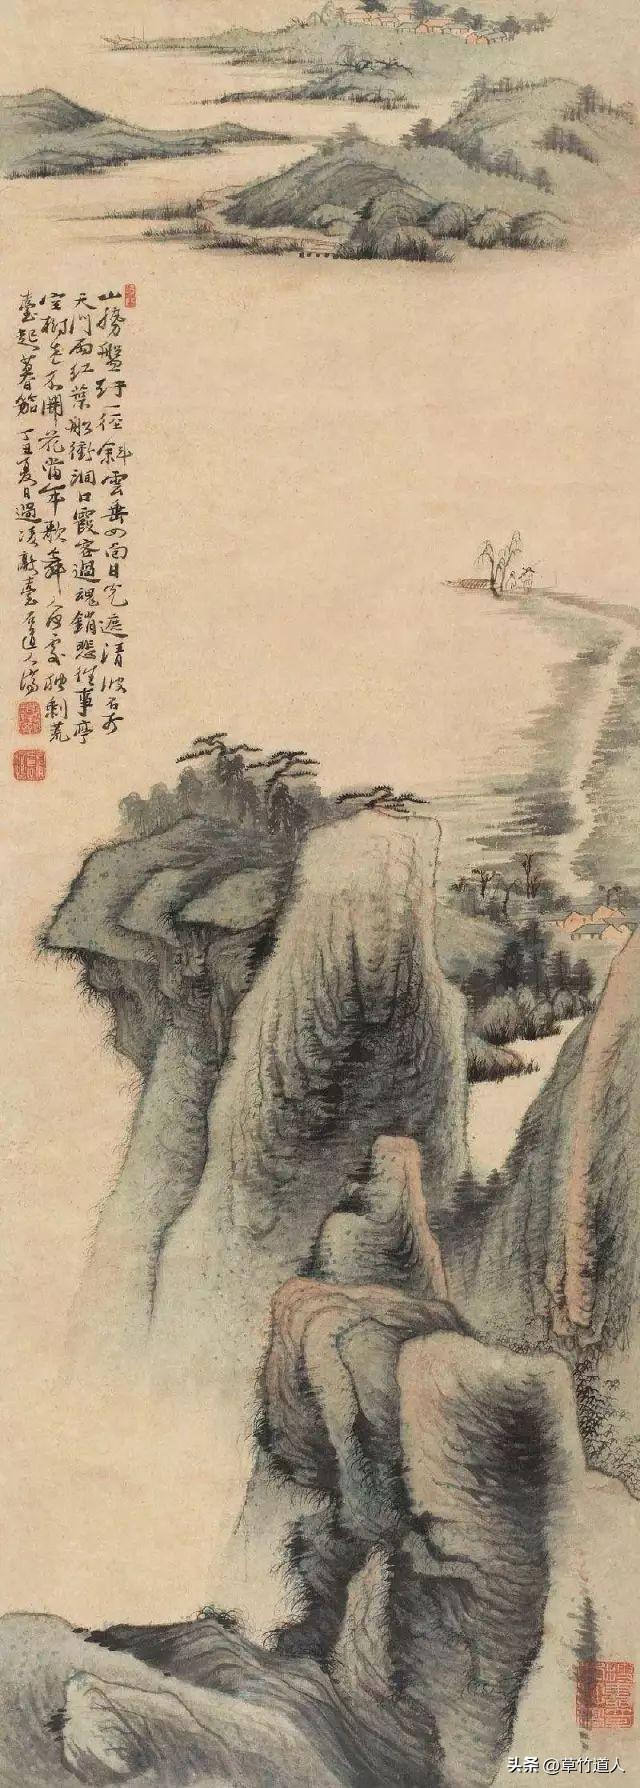 道家哲学对中国画的审美影响以及在构图中的体现